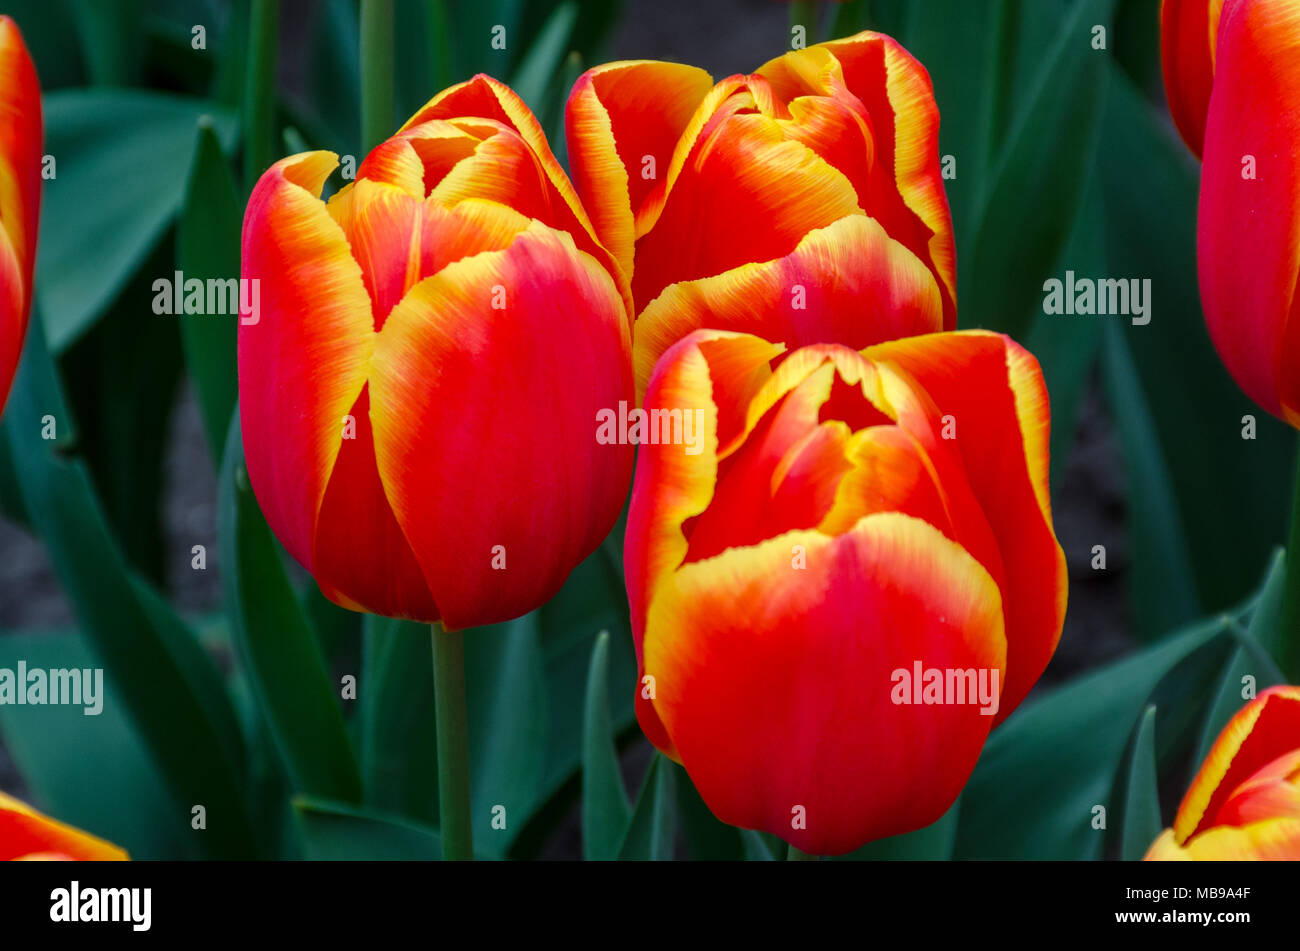 Three orange and yellow tulips Stock Photo